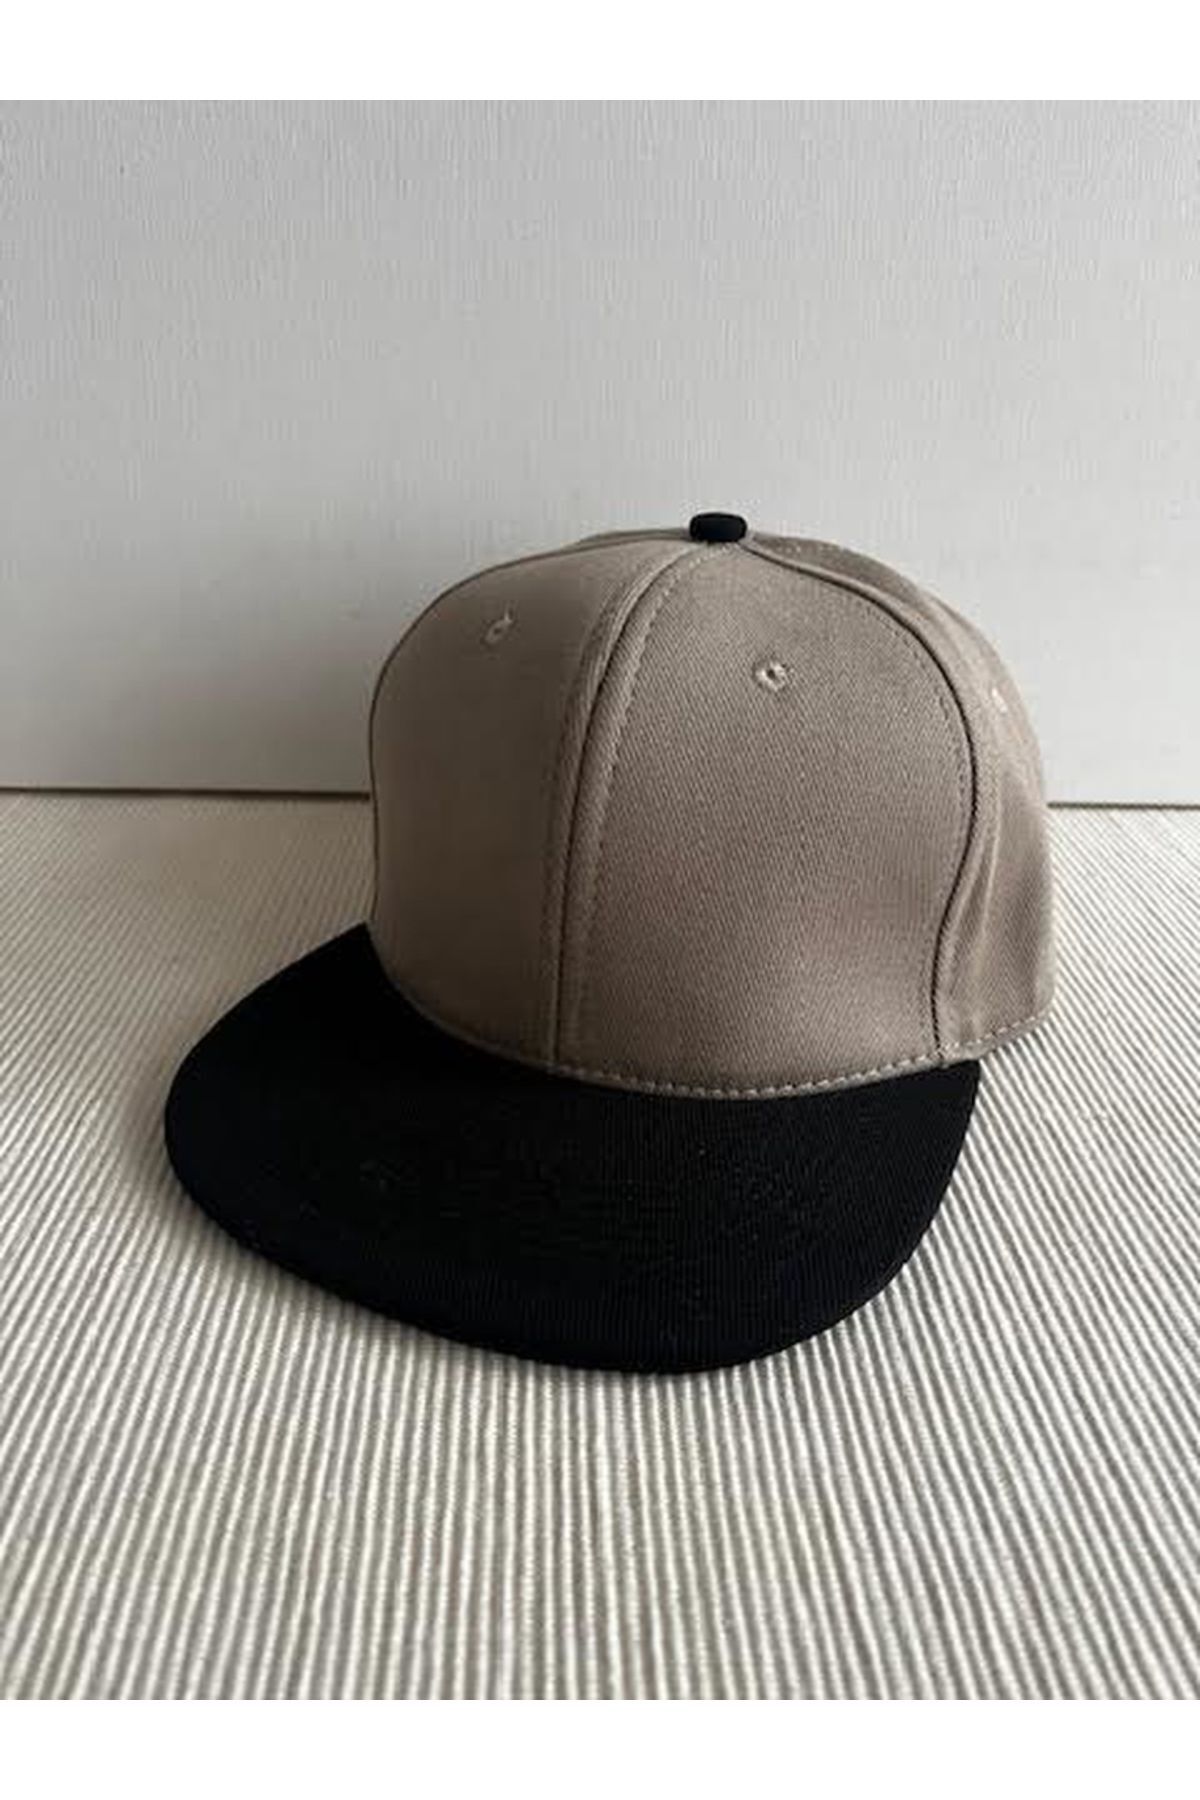 CosmoOutlet İki Renkli Basic Arkasından Ayarlanabilir Siyah-Bej Hip Hop Şapka